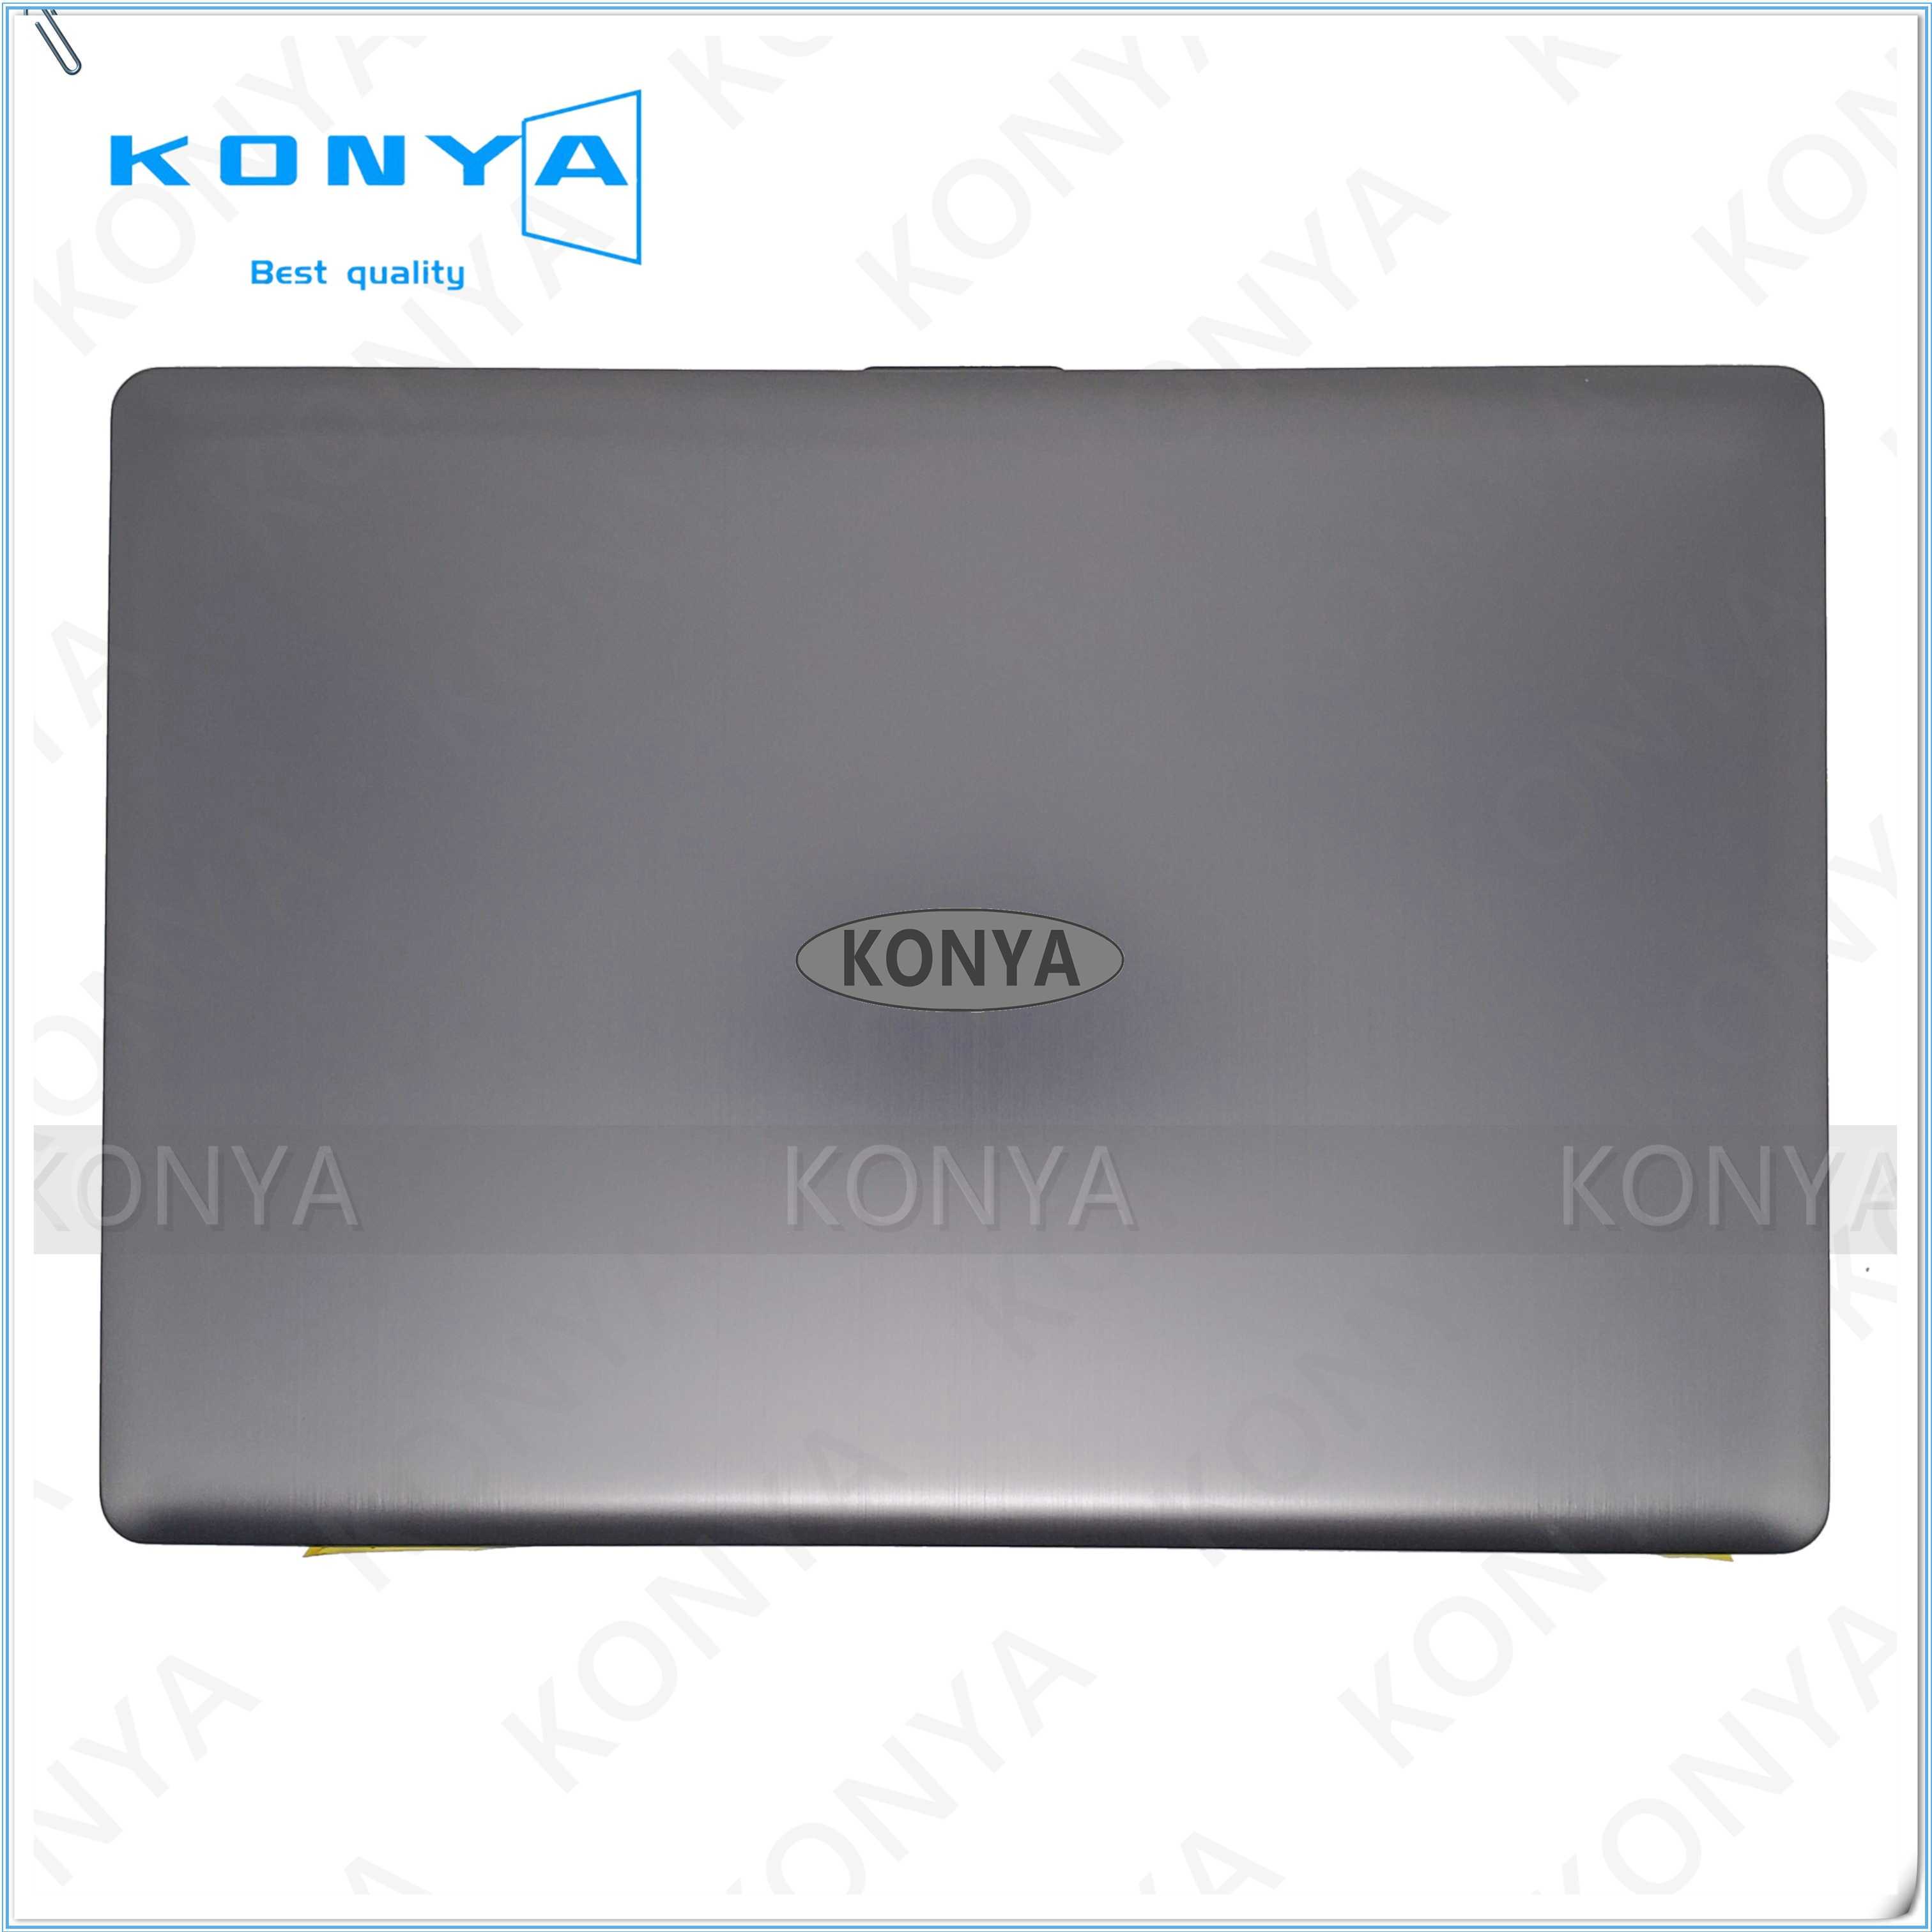 Ноутбук-планшет asus zenbook ux301la-de056h — купить, цена и характеристики, отзывы